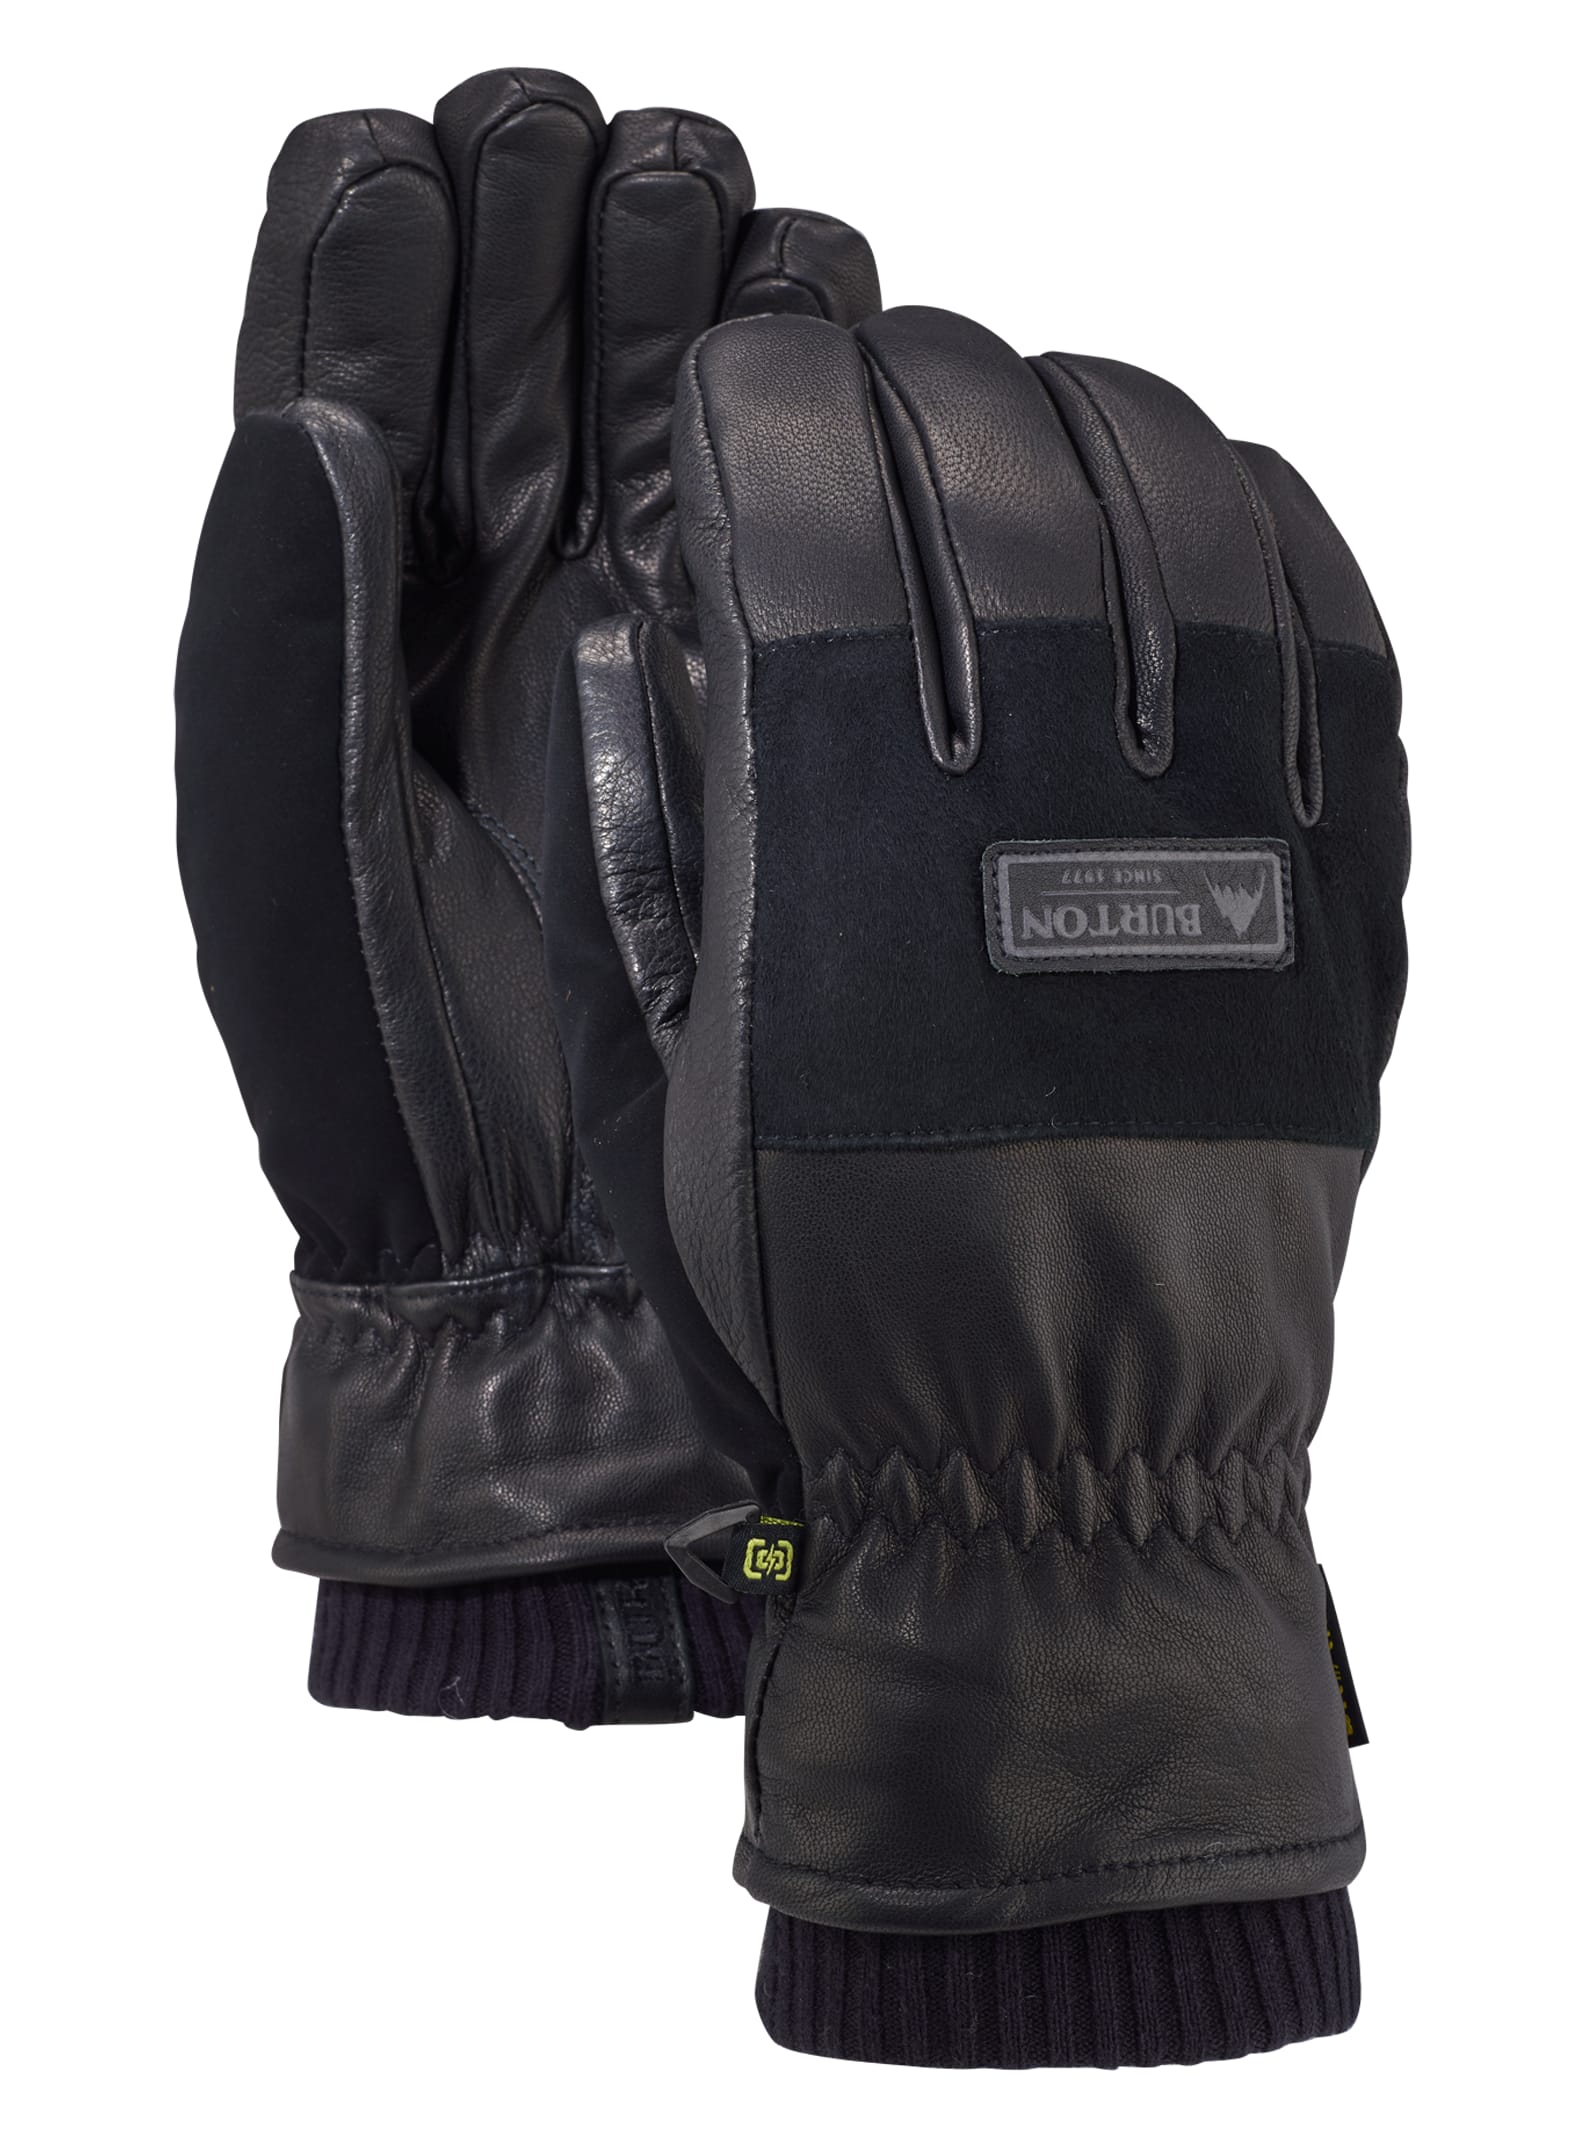 Men's Burton Free Range Glove | Burton.com Winter 2022 US